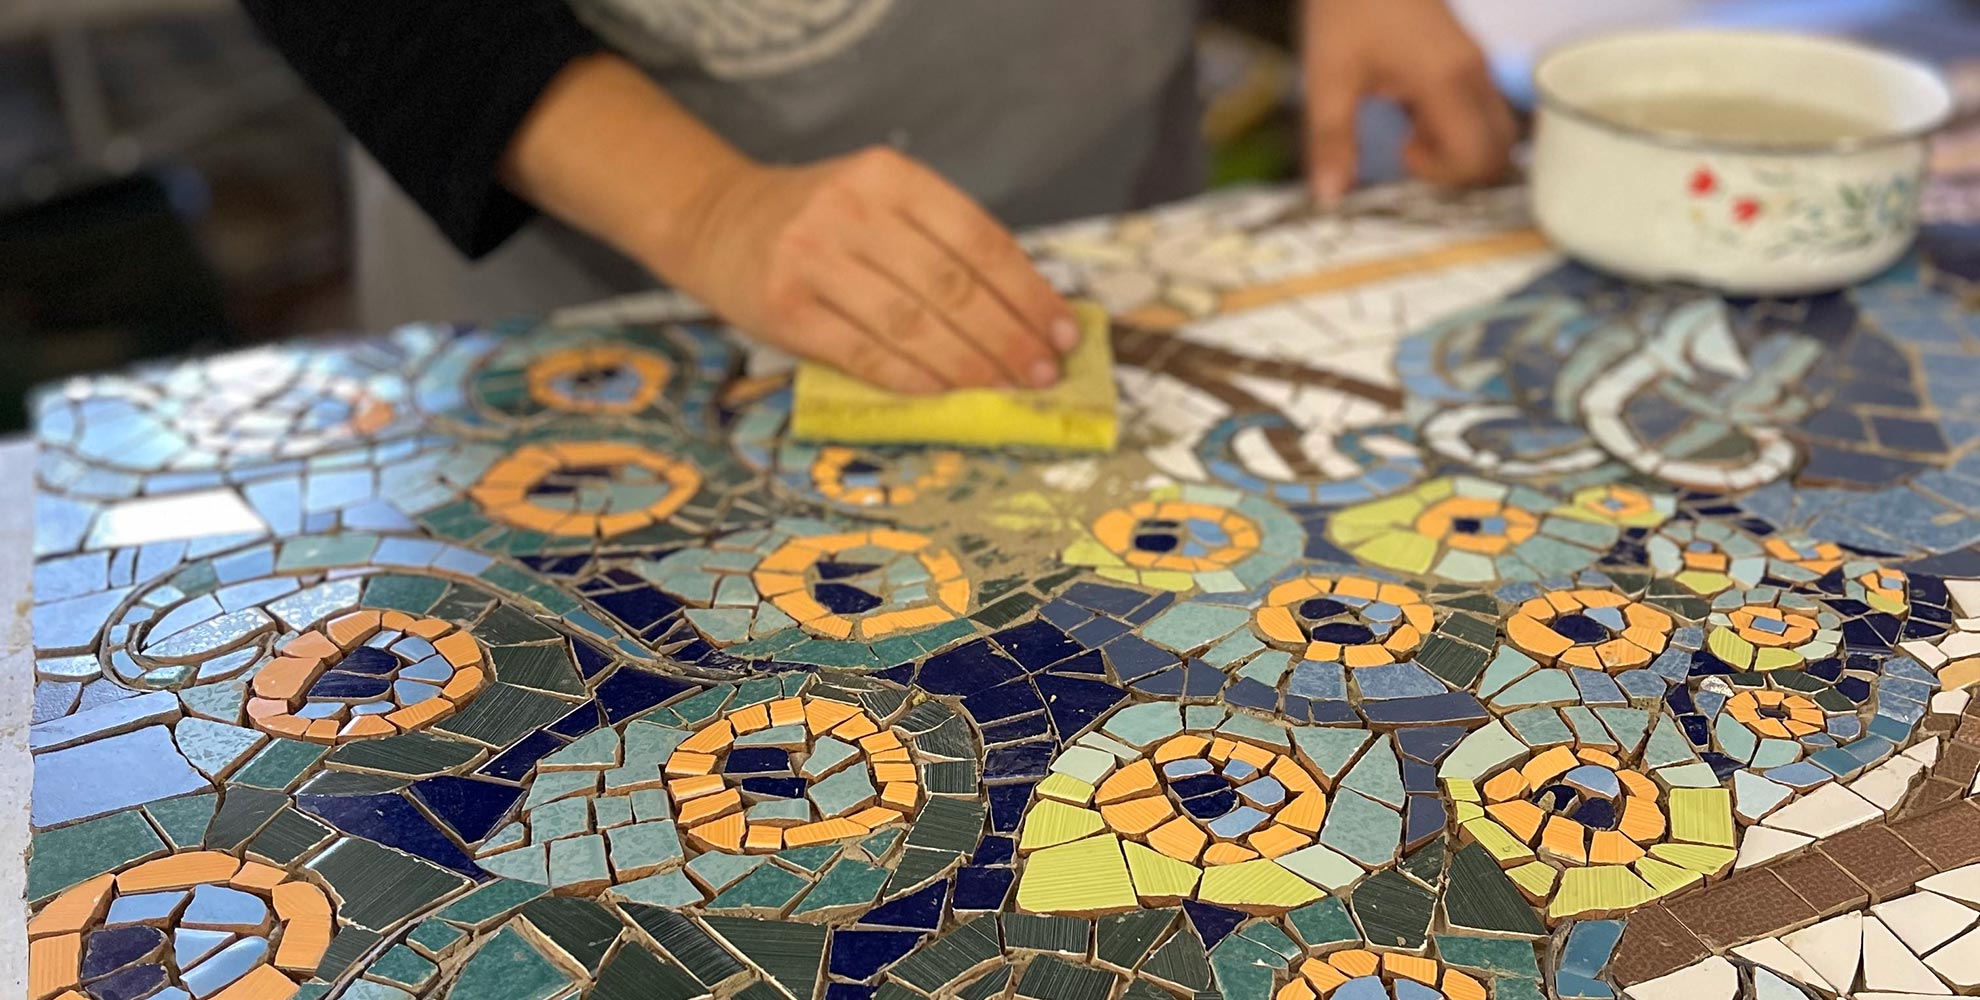 mosaicista che lavora alla creazione di un mosaico a trencadis che rappresenta un pavone colorato sui toni del azzurro e ocra